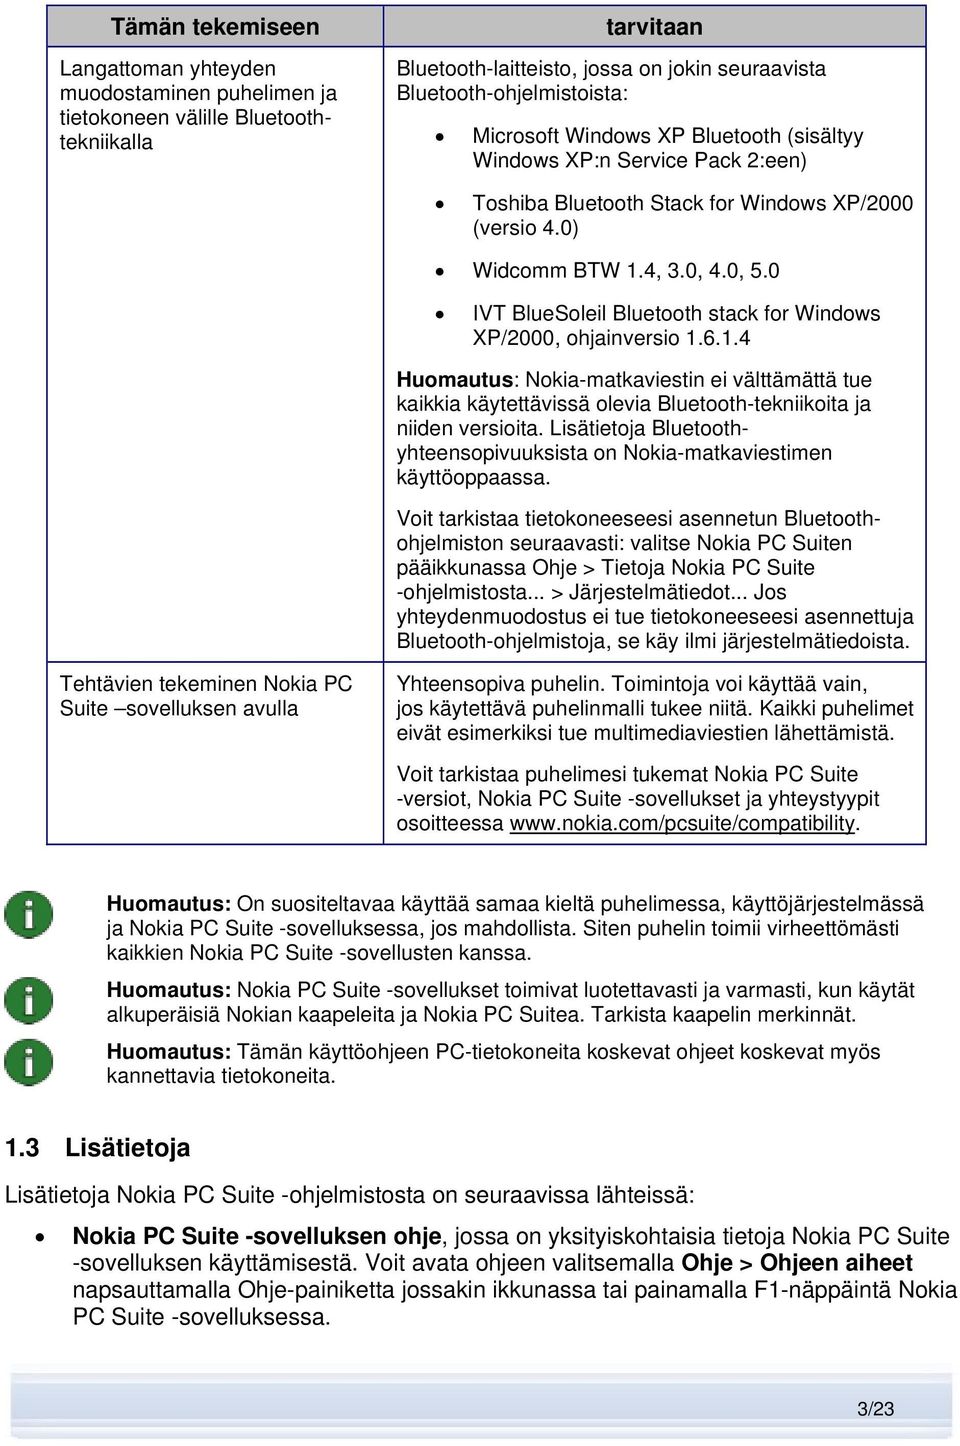 0 IVT BlueSoleil Bluetooth stack for Windows XP/2000, ohjainversio 1.6.1.4 Huomautus: Nokia-matkaviestin ei välttämättä tue kaikkia käytettävissä olevia Bluetooth-tekniikoita ja niiden versioita.